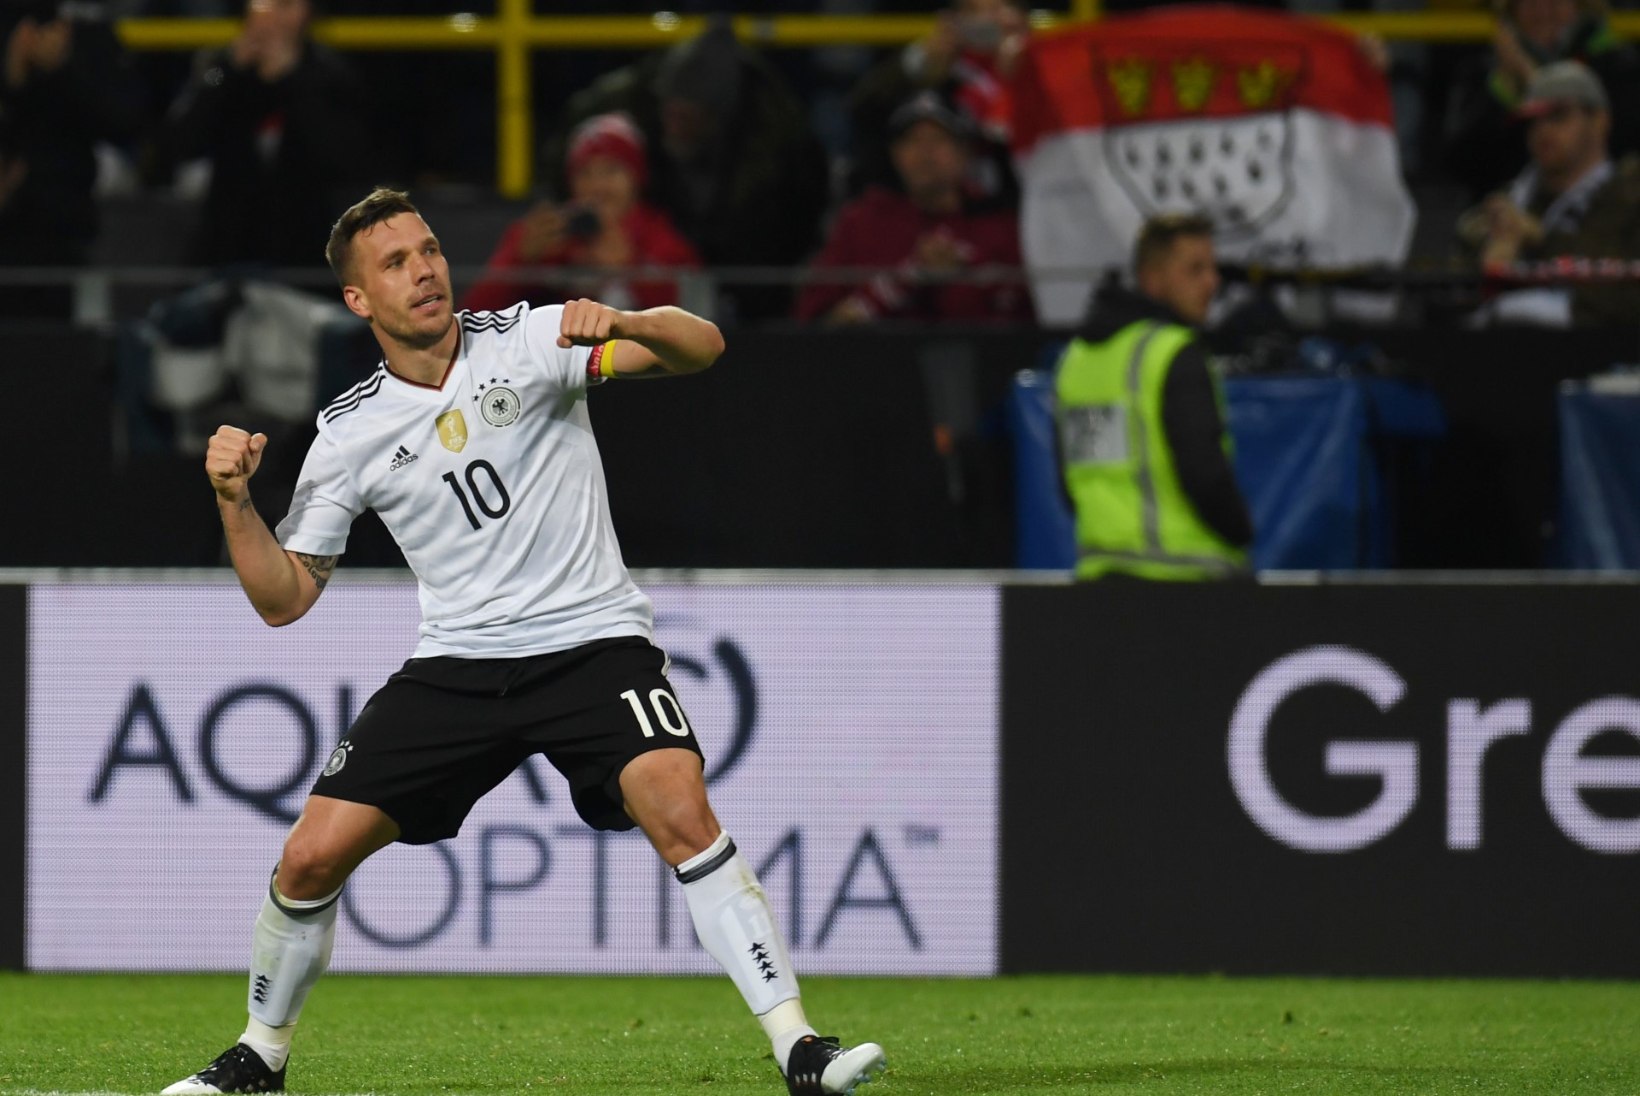 GALERII JA VIDEO | Lukas Podolski imeline lahkumine viis Saksamaa klassikalises duellis Inglismaa üle võidule 